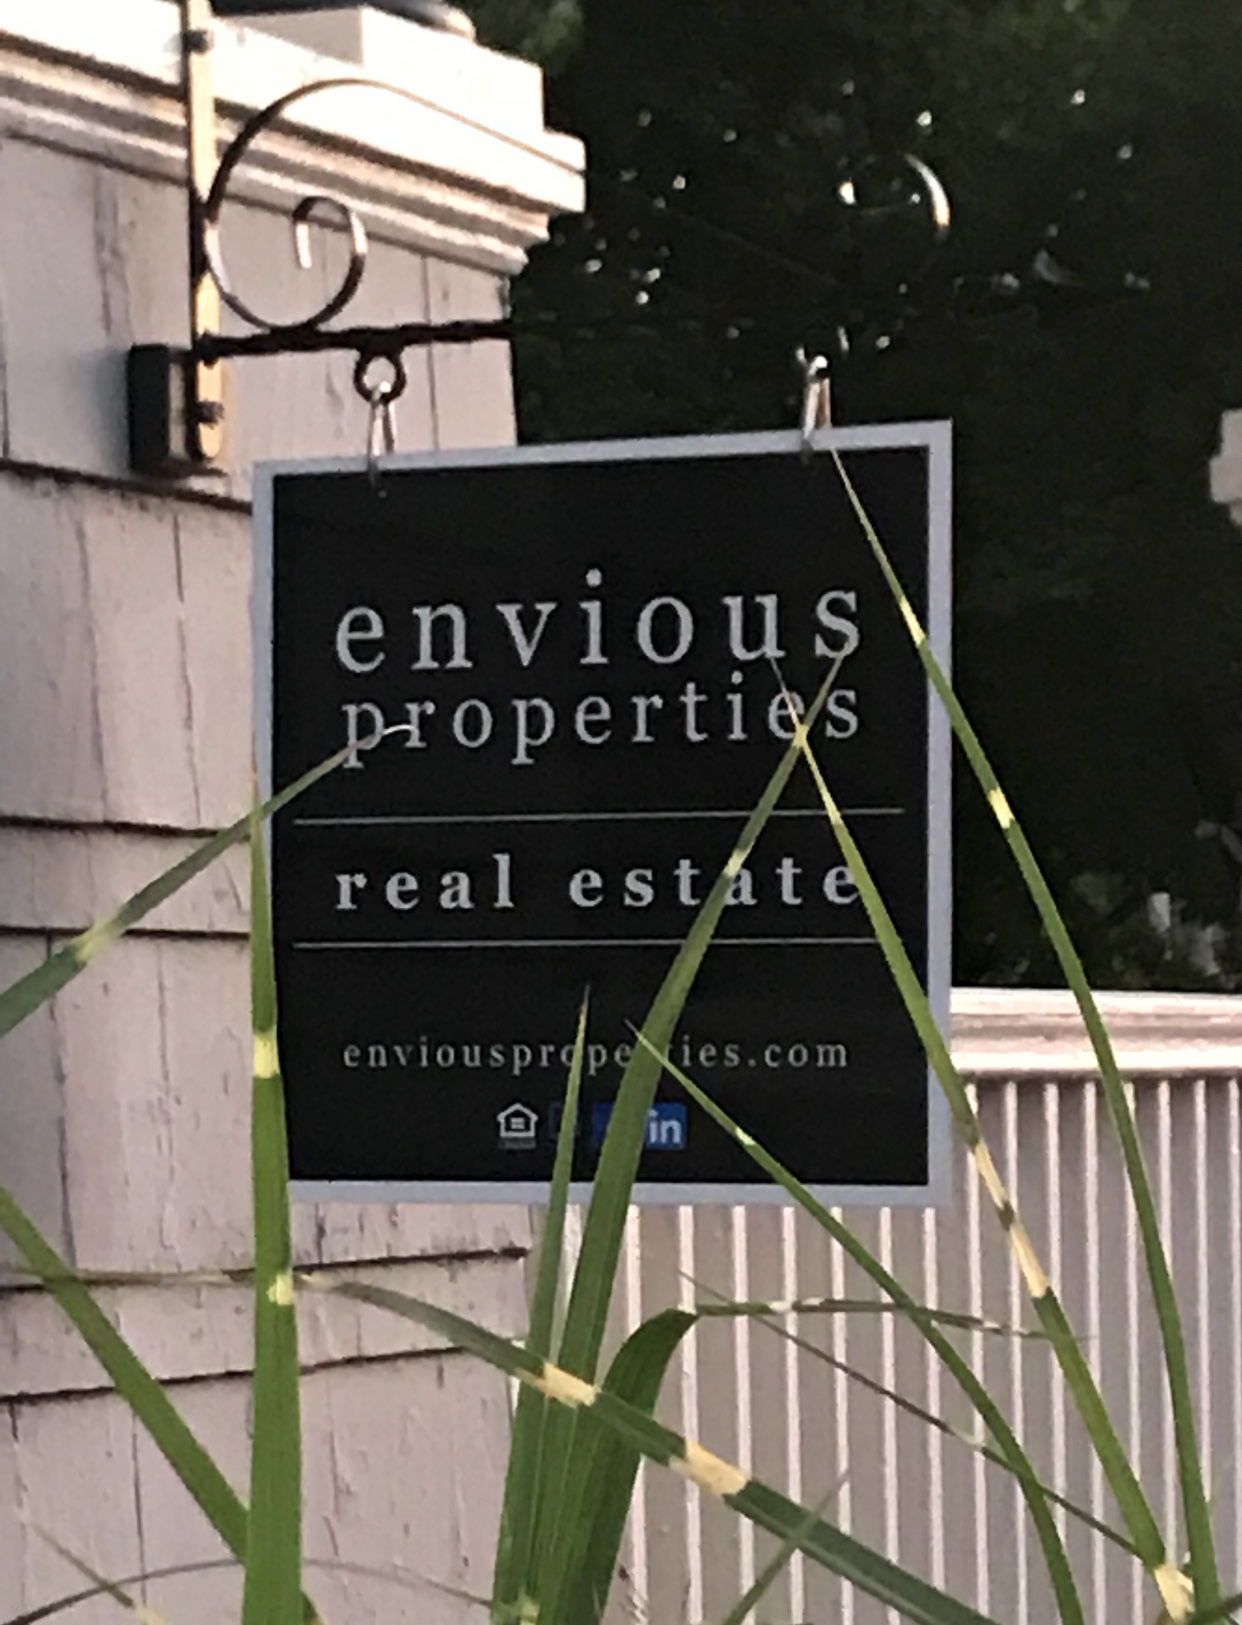 envious properties real estate